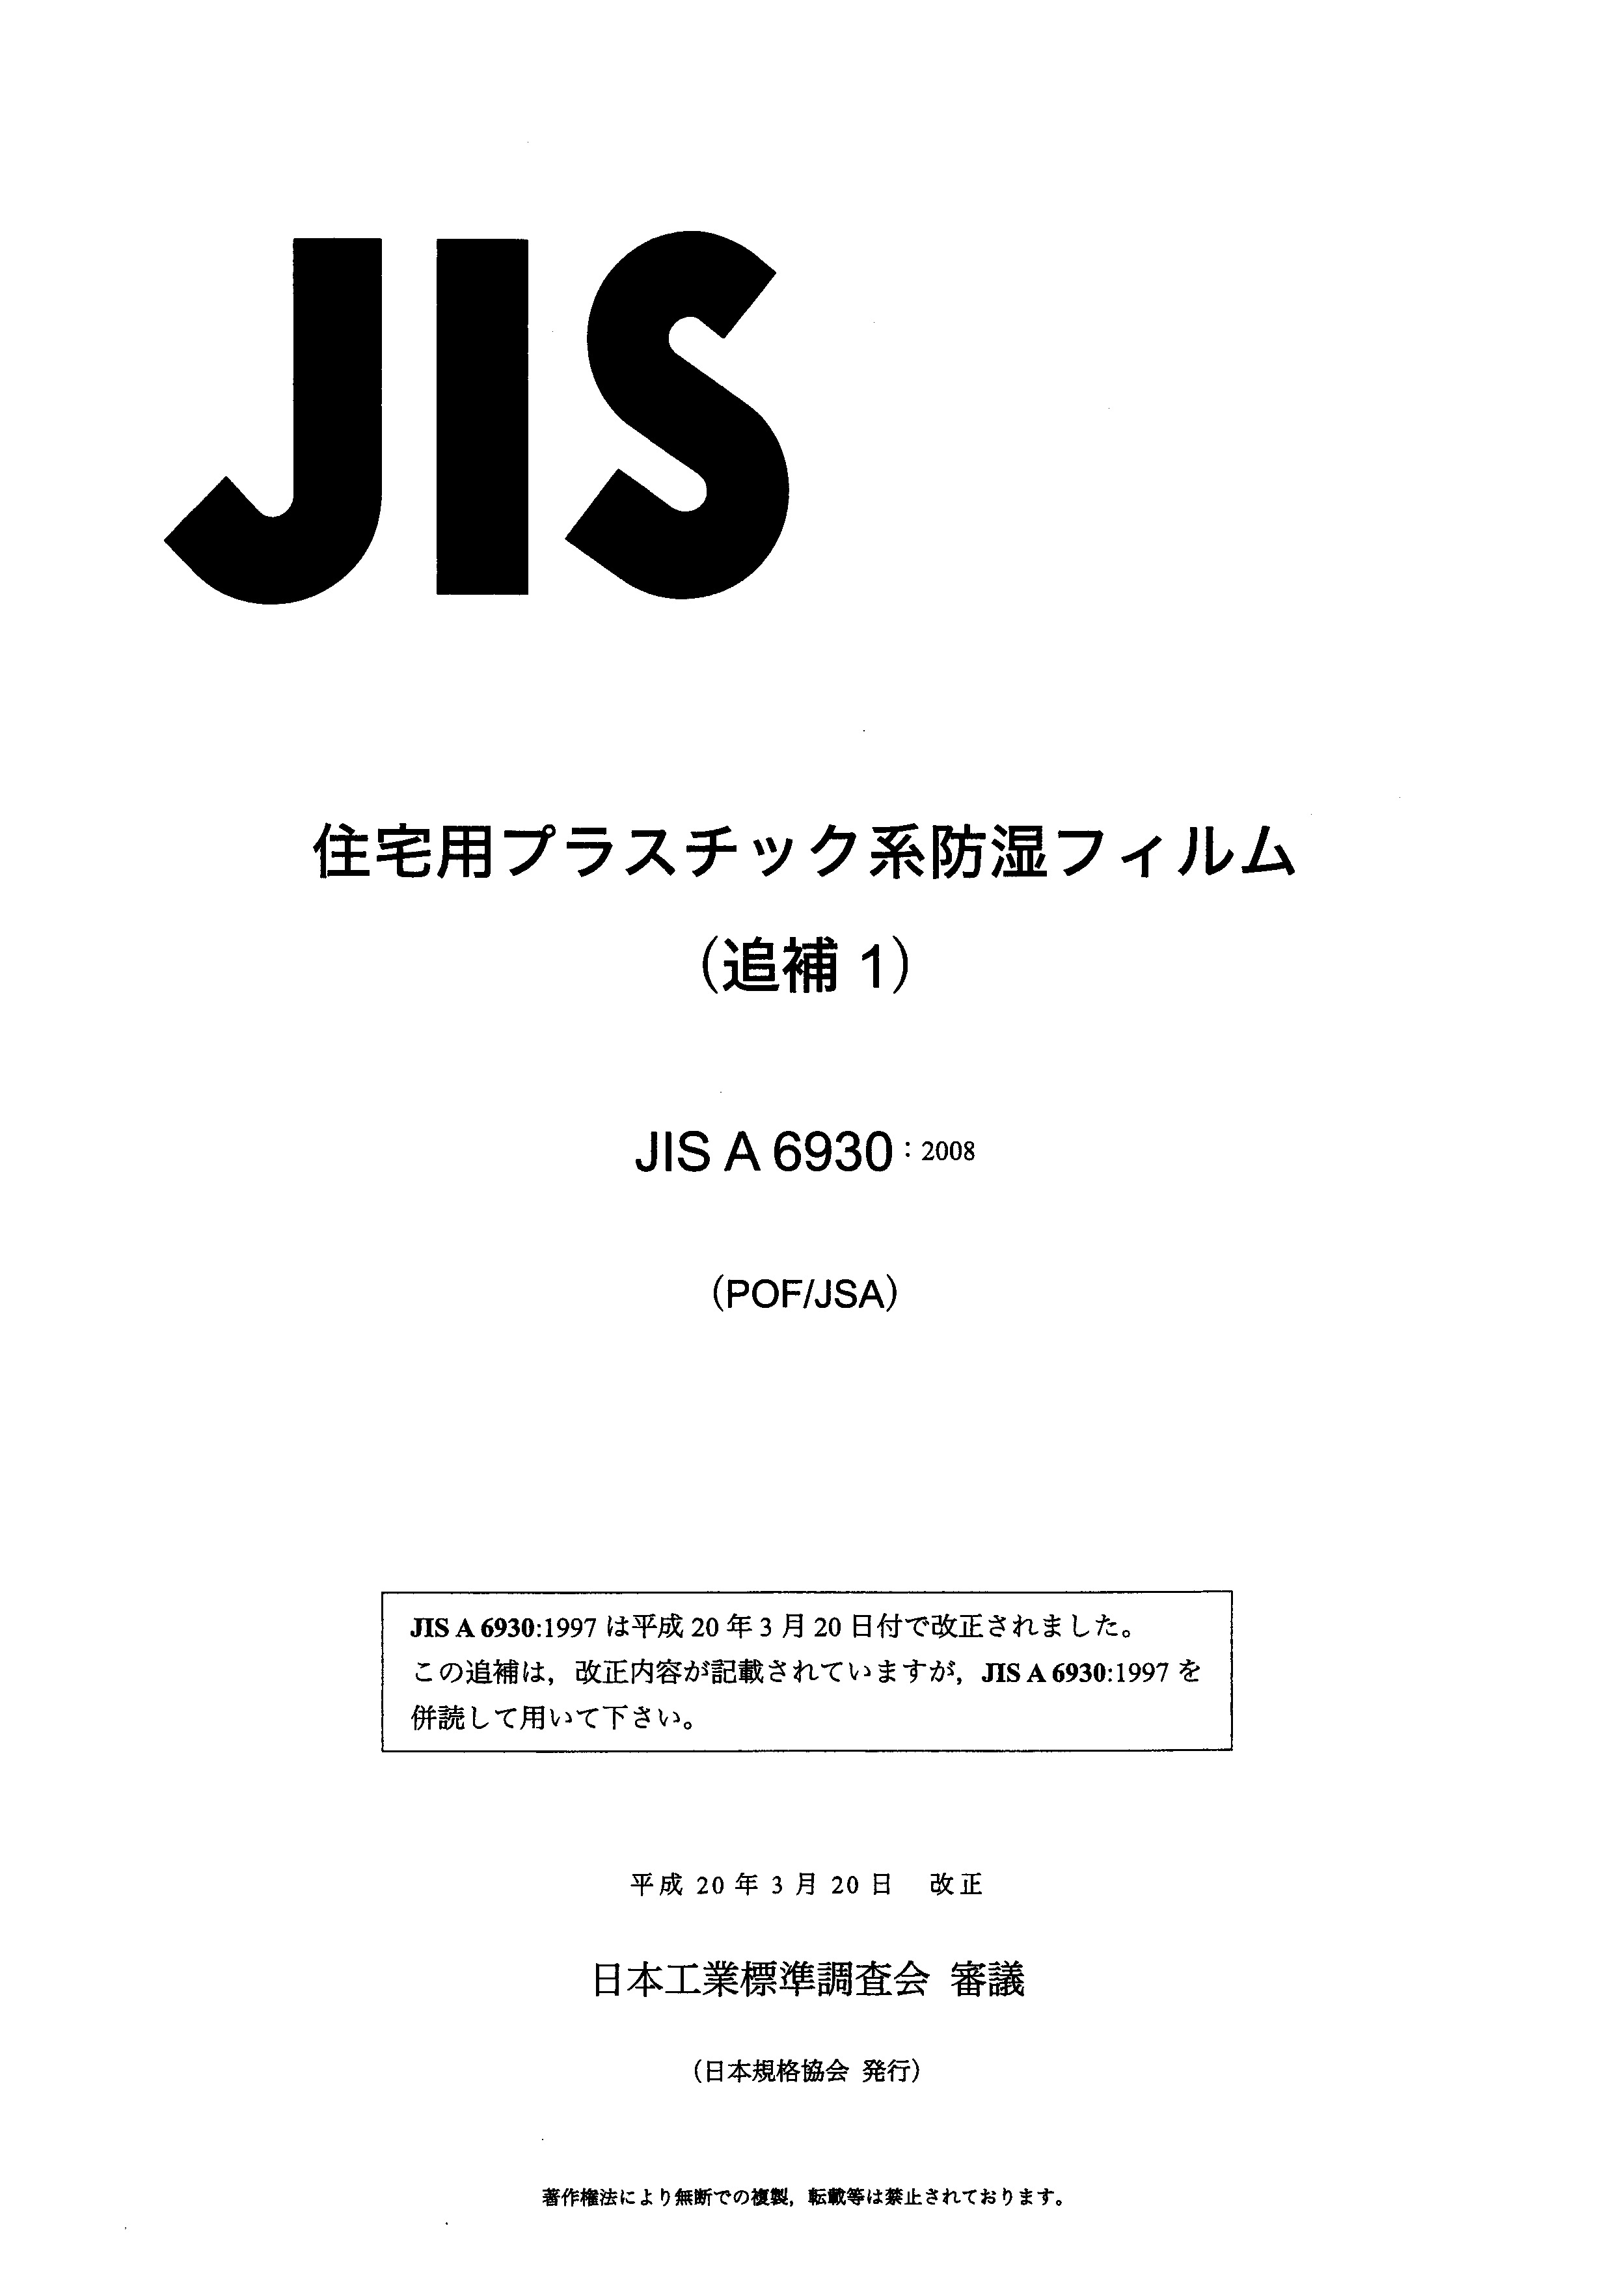 JIS A6930 AMD 1-2008